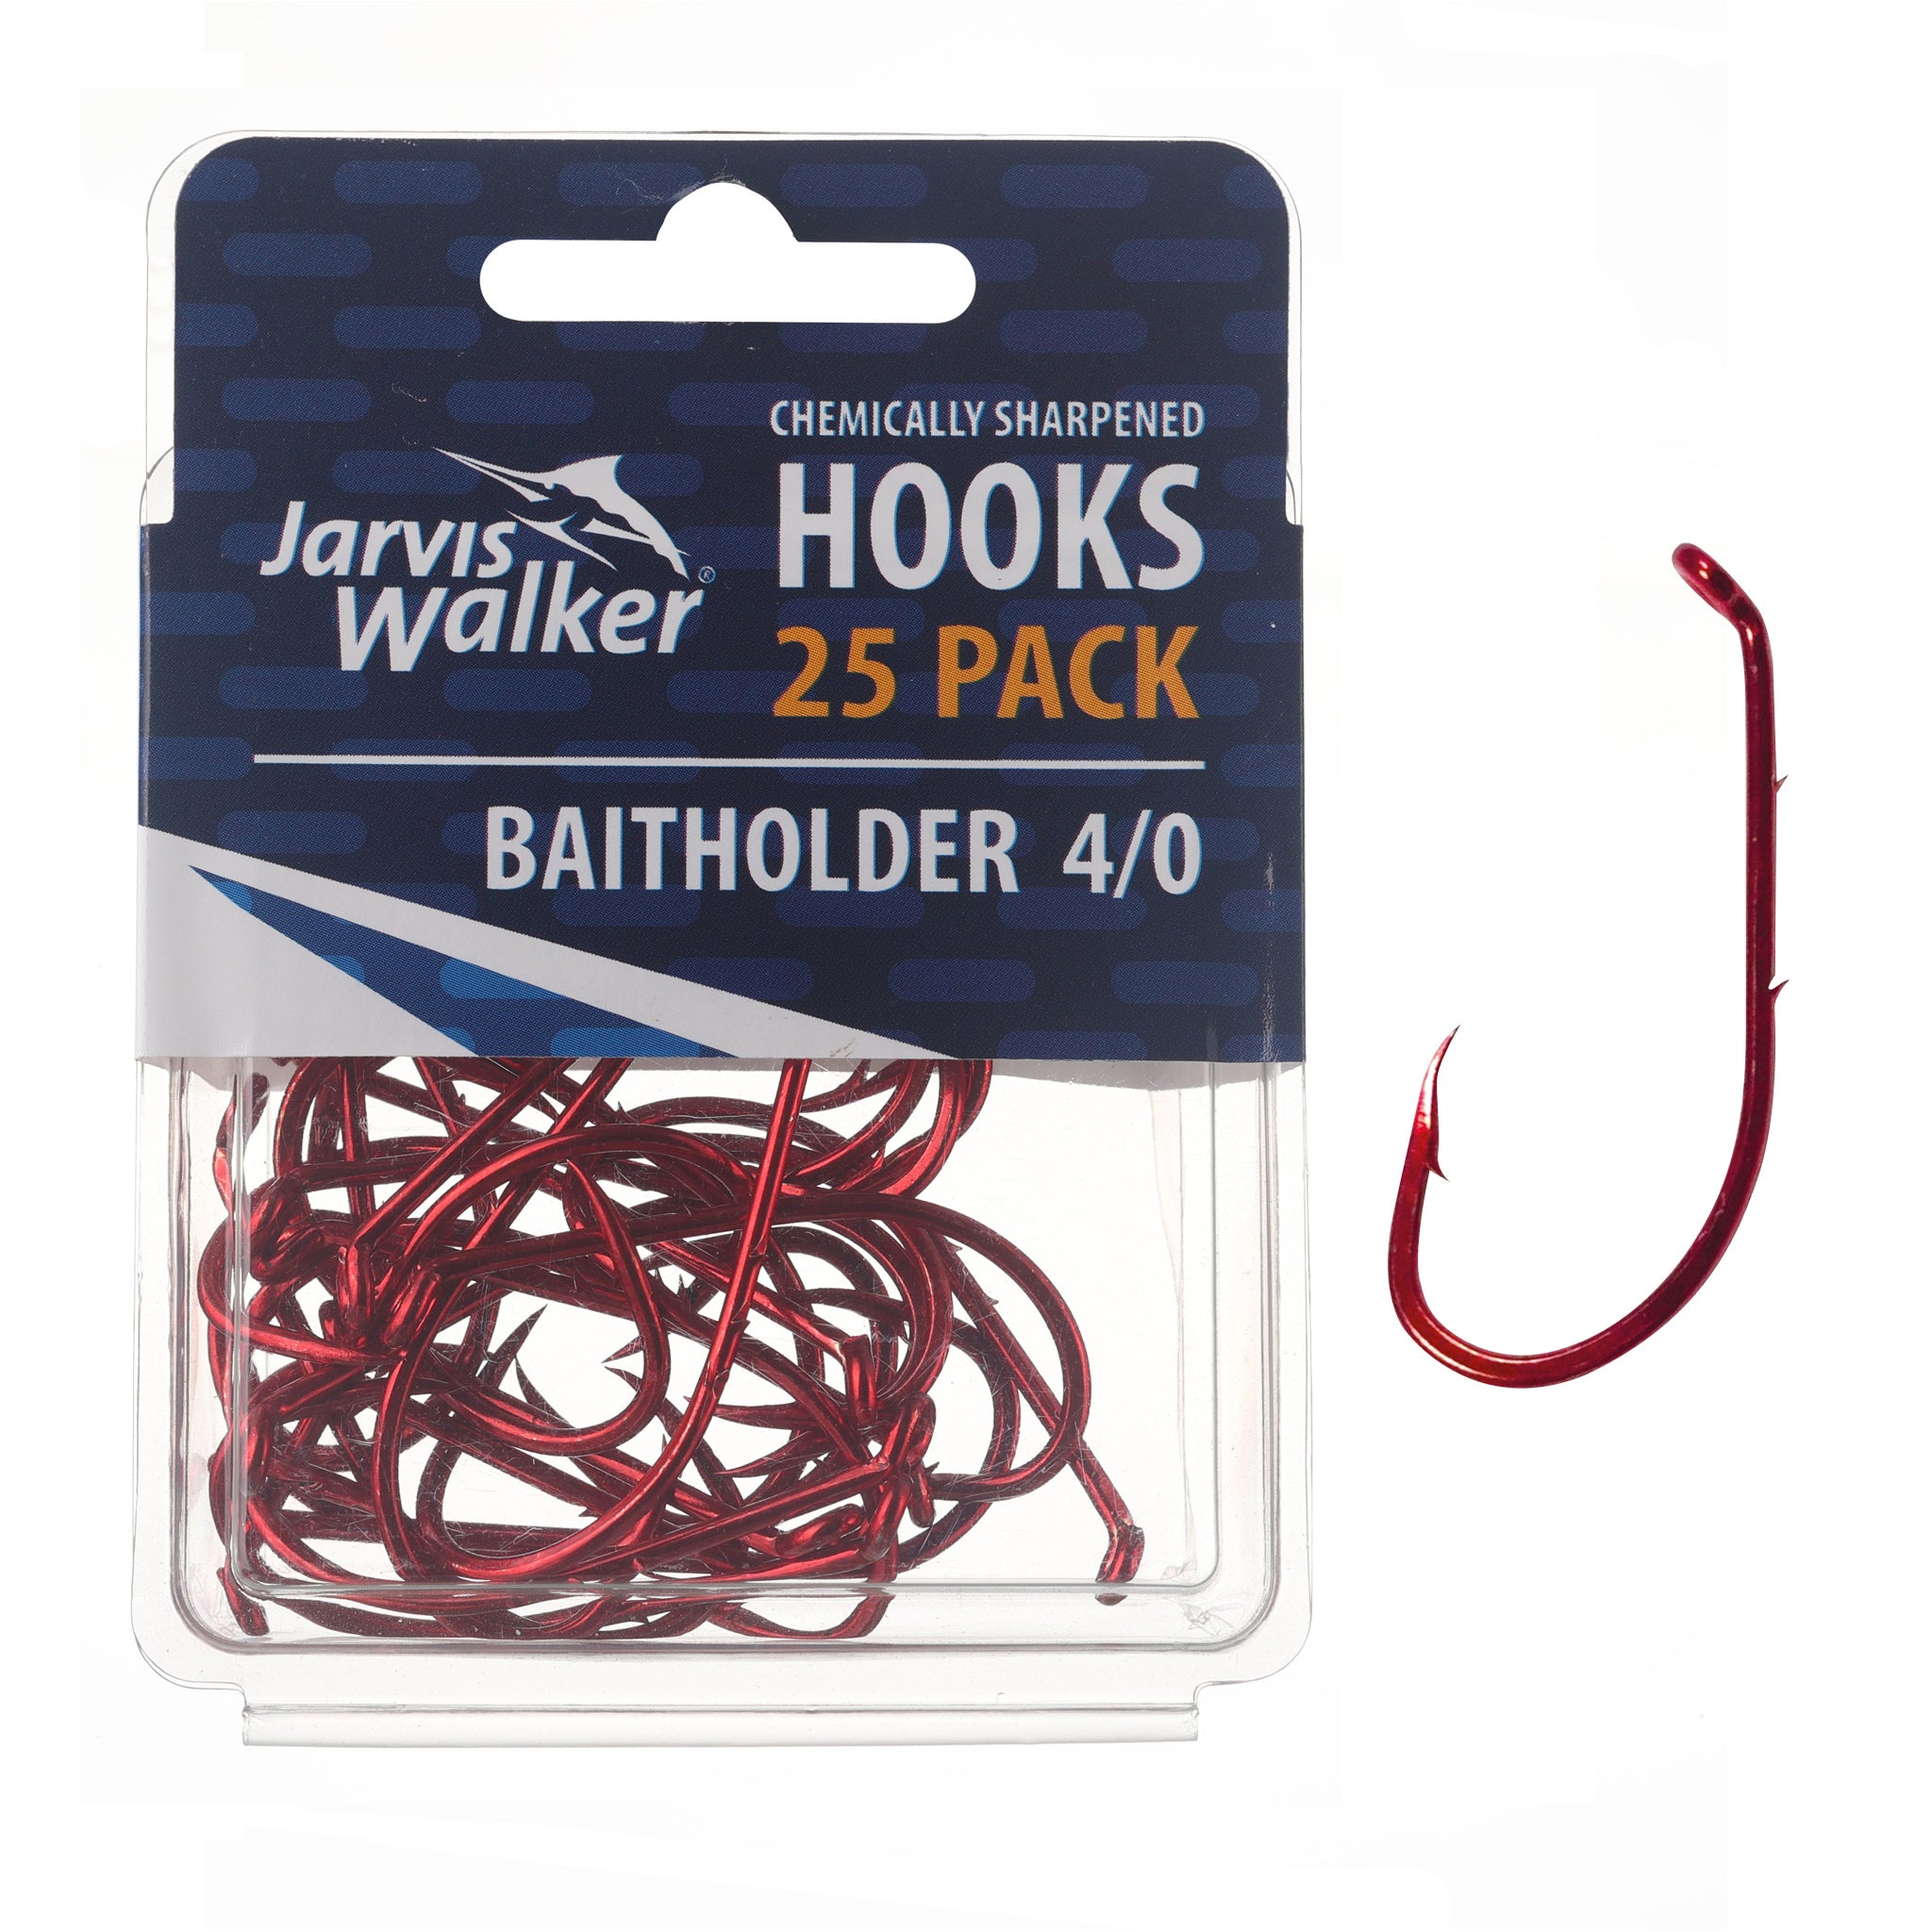 Jarvis Walker Chemically Sharpened Baitholder Hooks - 25 Packs